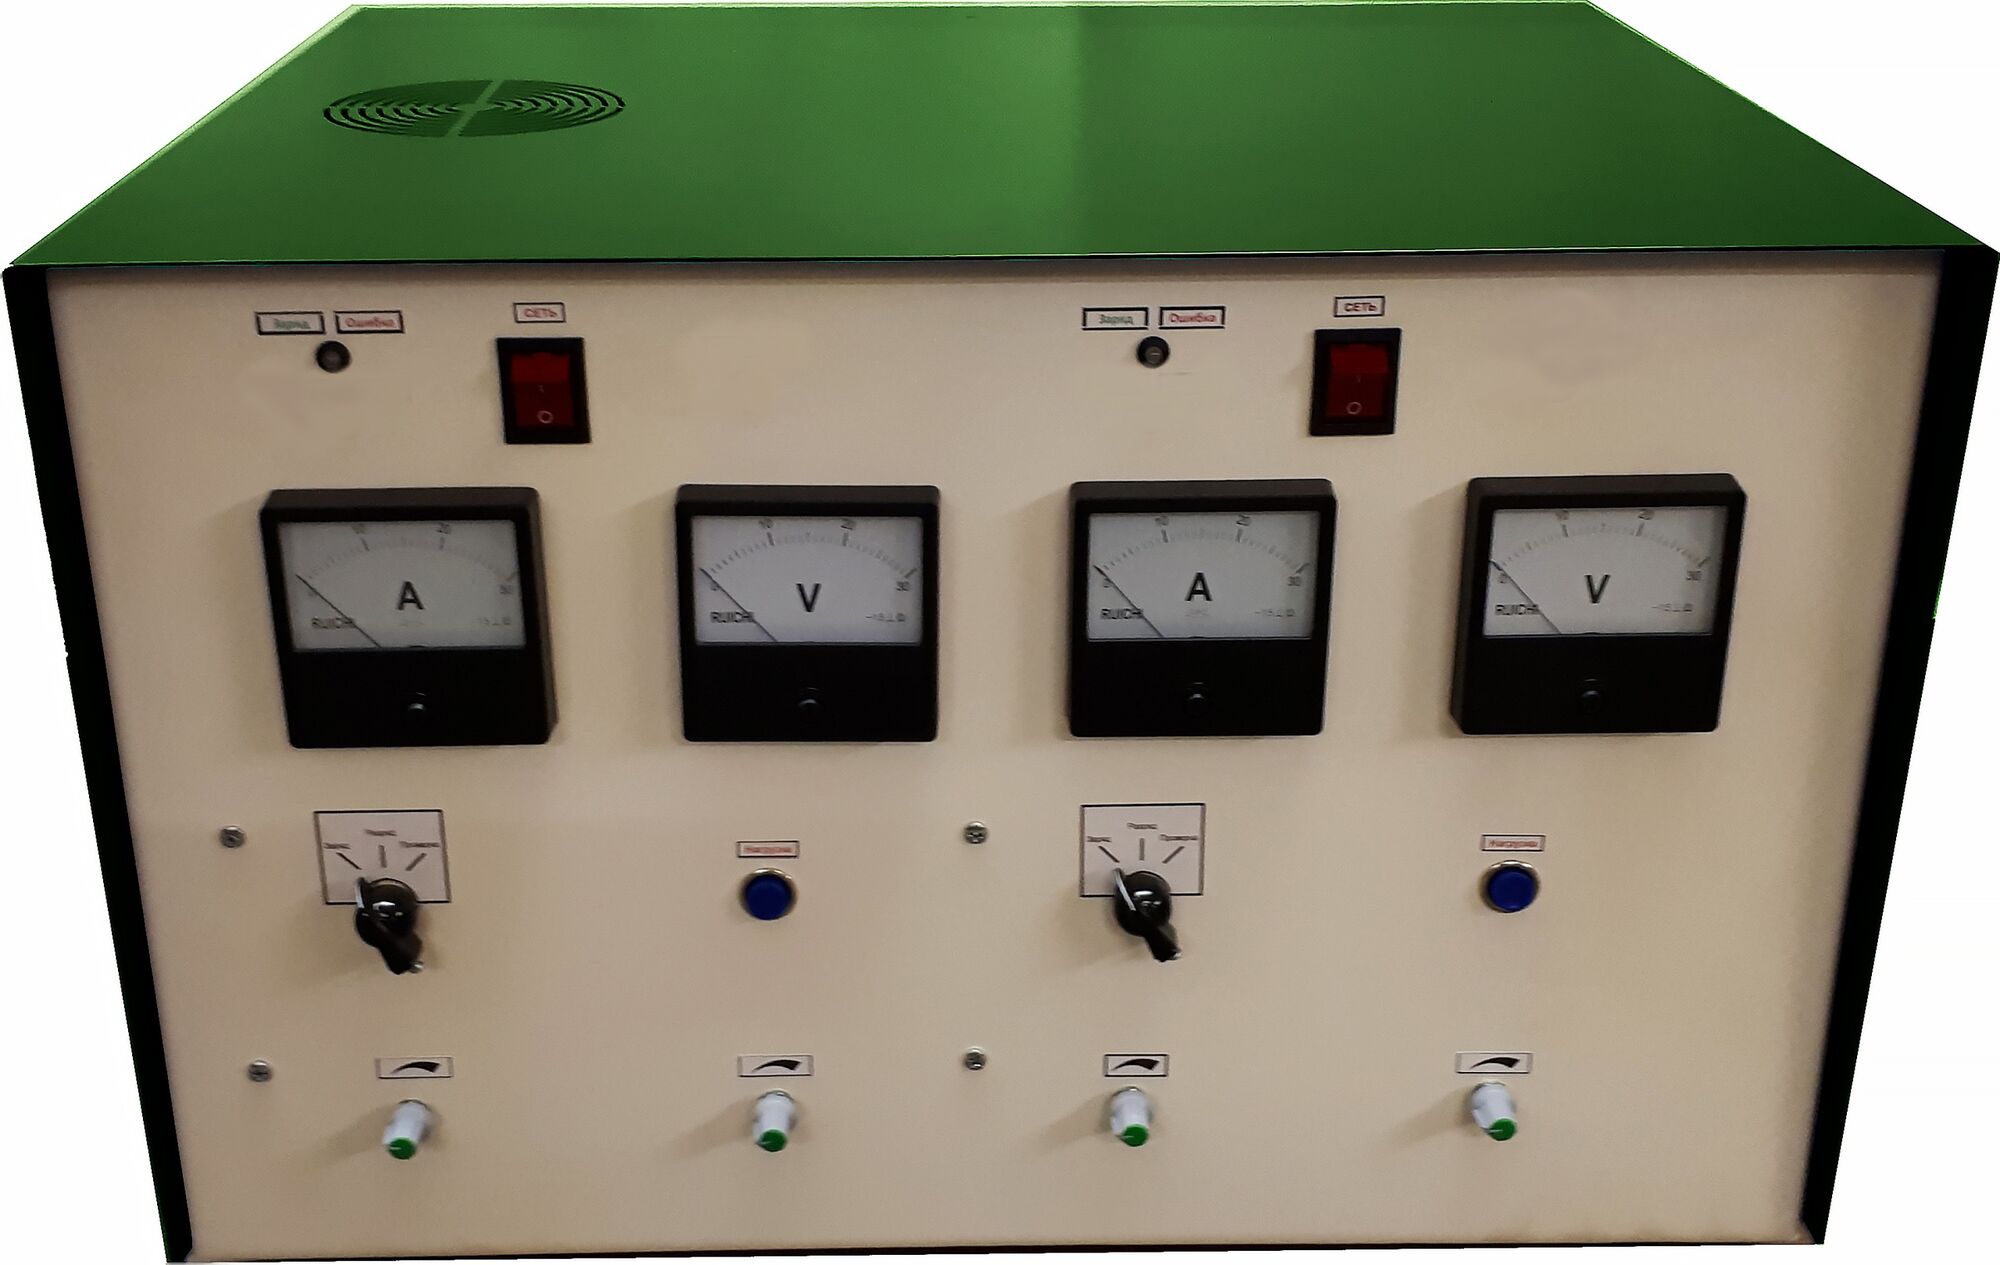 Импульсное зарядно-разрядное устройство ЗУ-2-2И(ЗР)